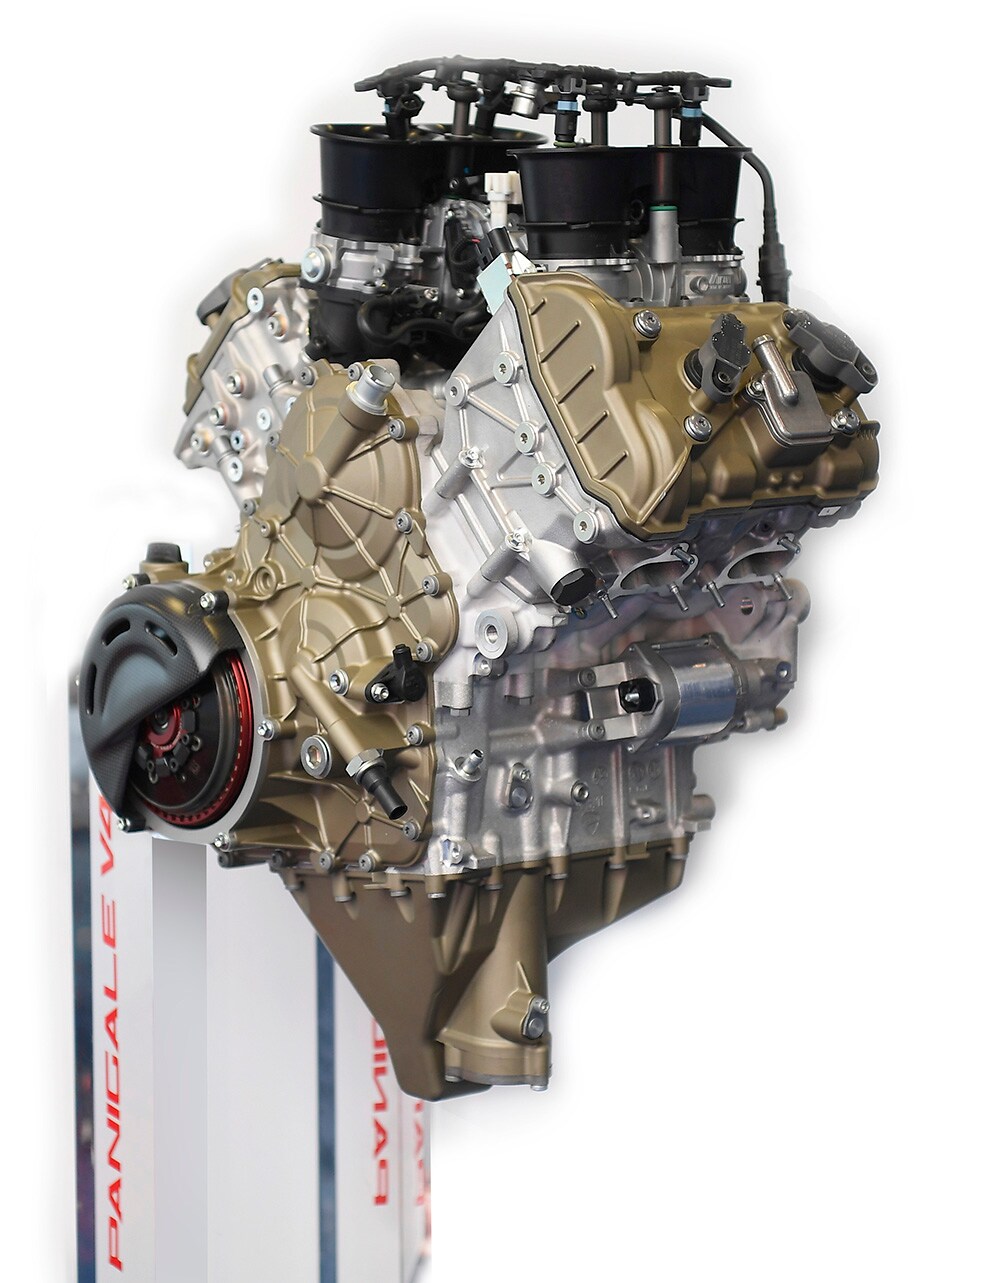 MotoGP直系の技術を搭載！ドゥカティの新型「パニガーレV4 R」は最高出力177kW！